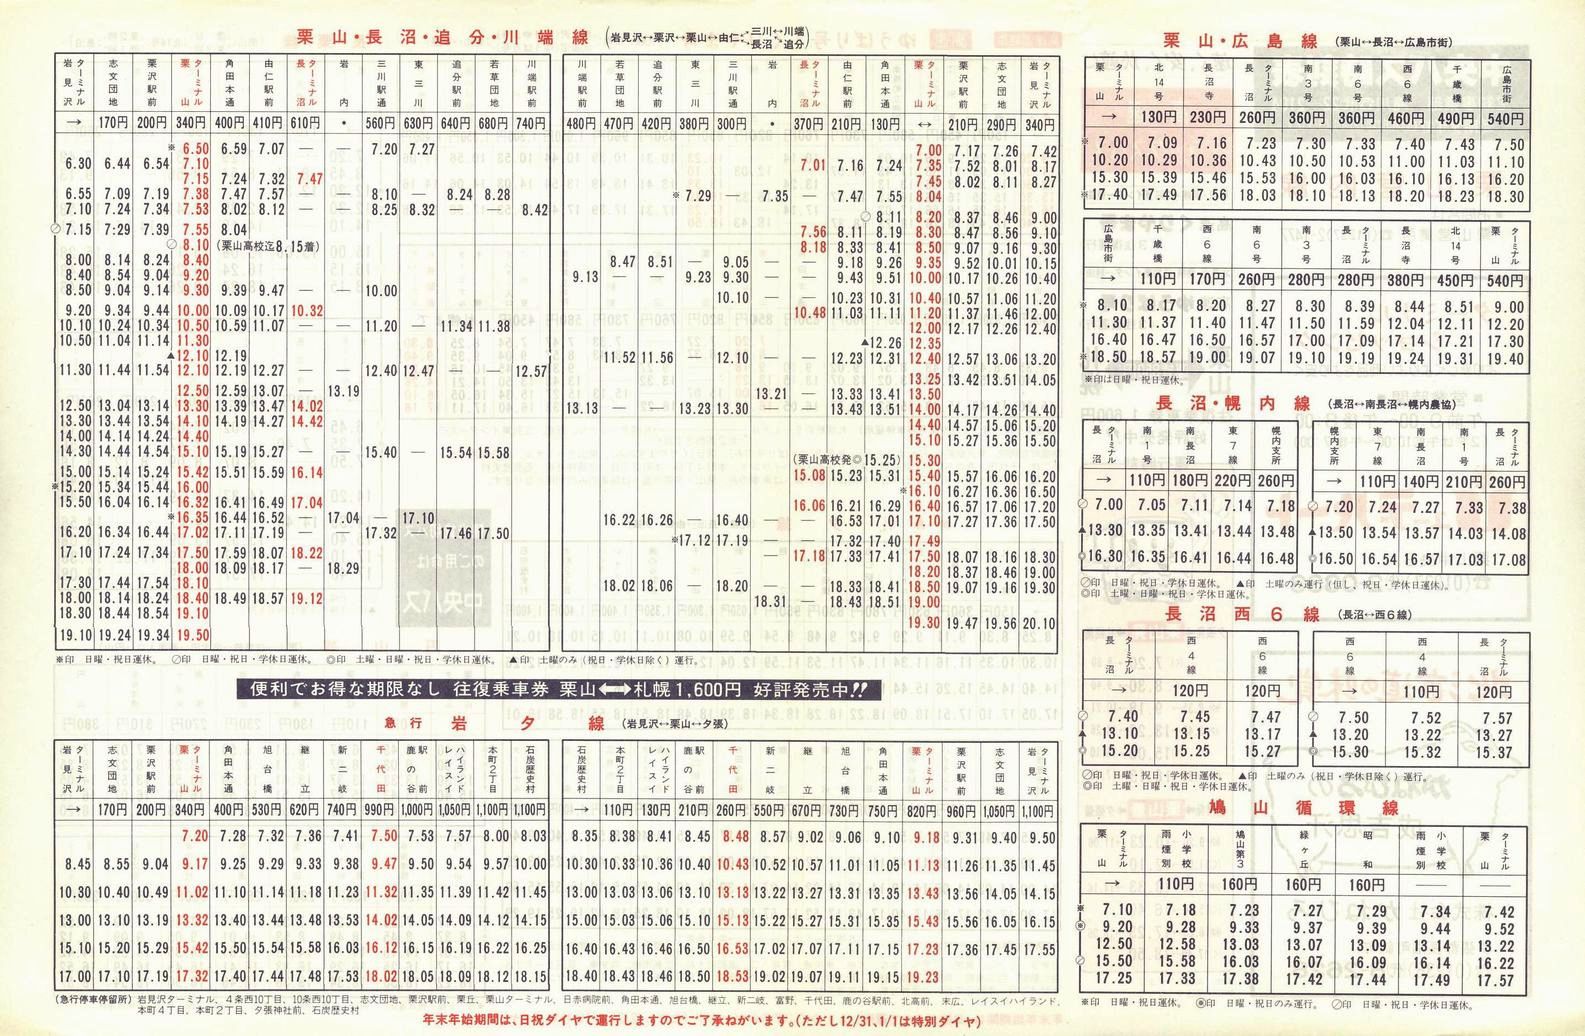 1987-12-01改正_北海道中央バス(空知)_栗山管内線時刻表裏面